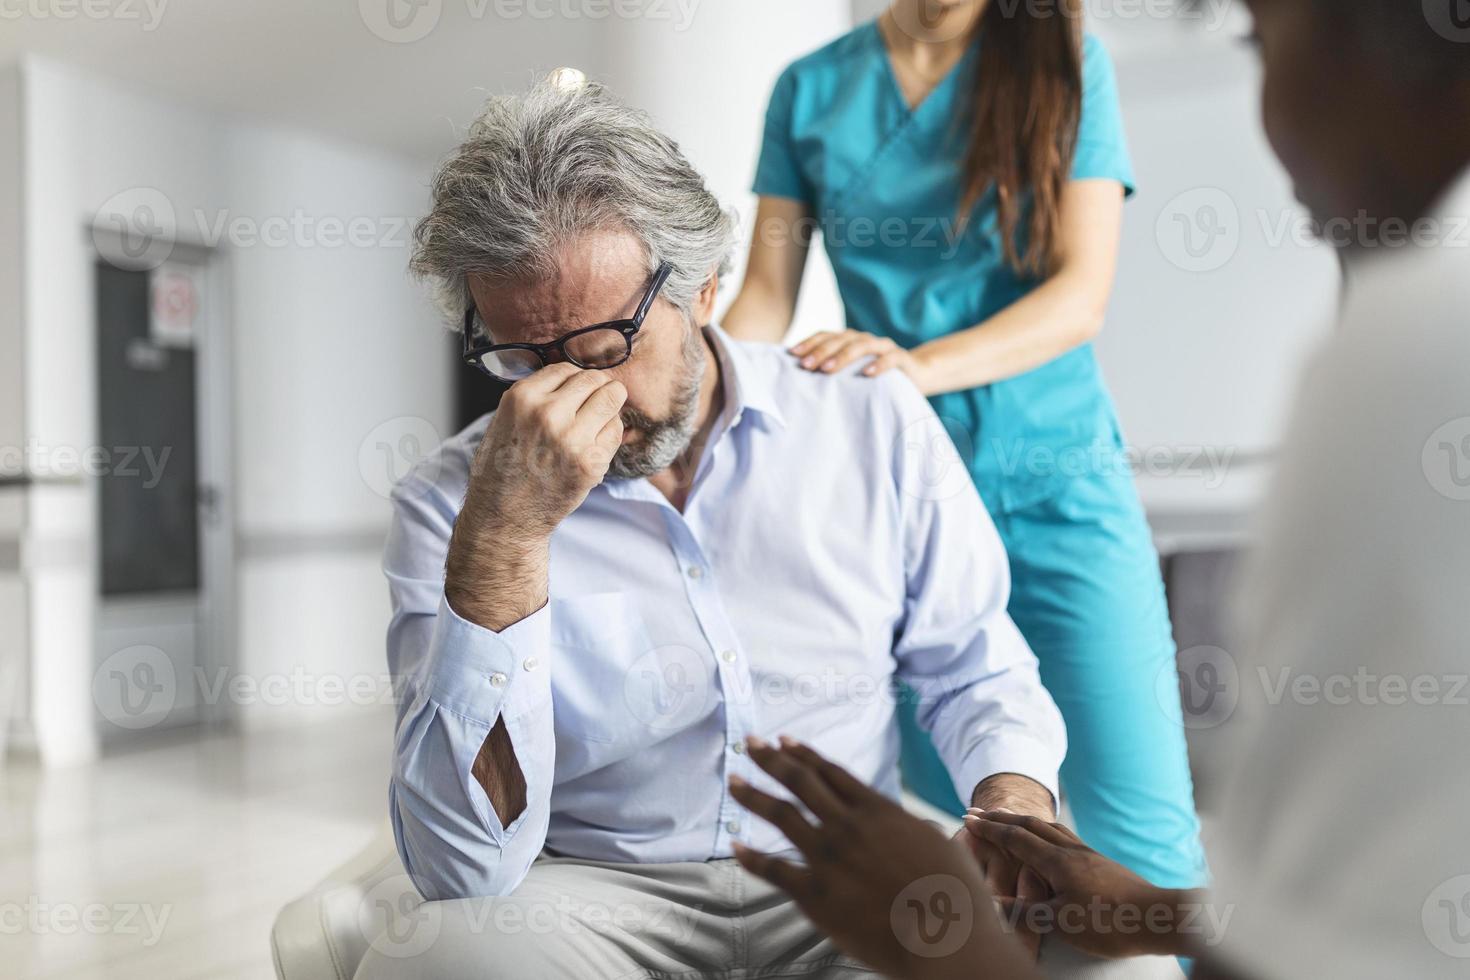 médecin consolant un homme bouleversé dans la salle d'attente de l'hôpital. le patient reçoit de mauvaises nouvelles, il est désespéré et pleure, le médecin soutient et réconforte son patient avec sympathie. photo